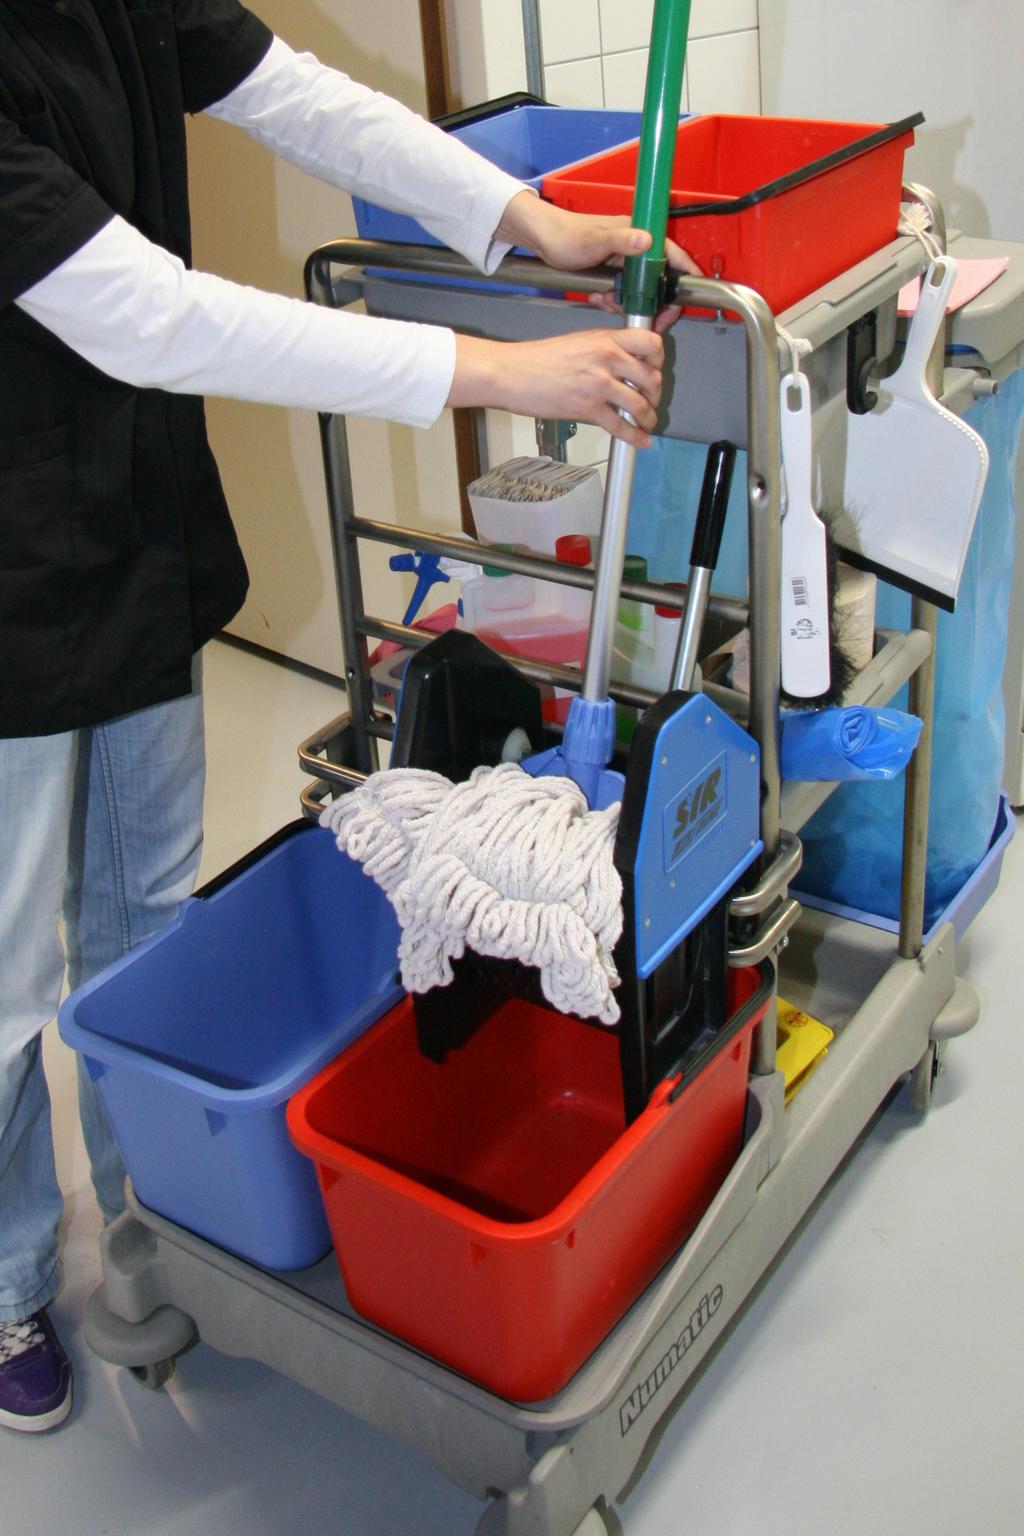 In de professionele schoonmaak werk je vaak met een materiaalwagen. Hierop staan een of twee emmers met verschillende kleuren werkdoeken en verschillende middelen en gereedschappen.